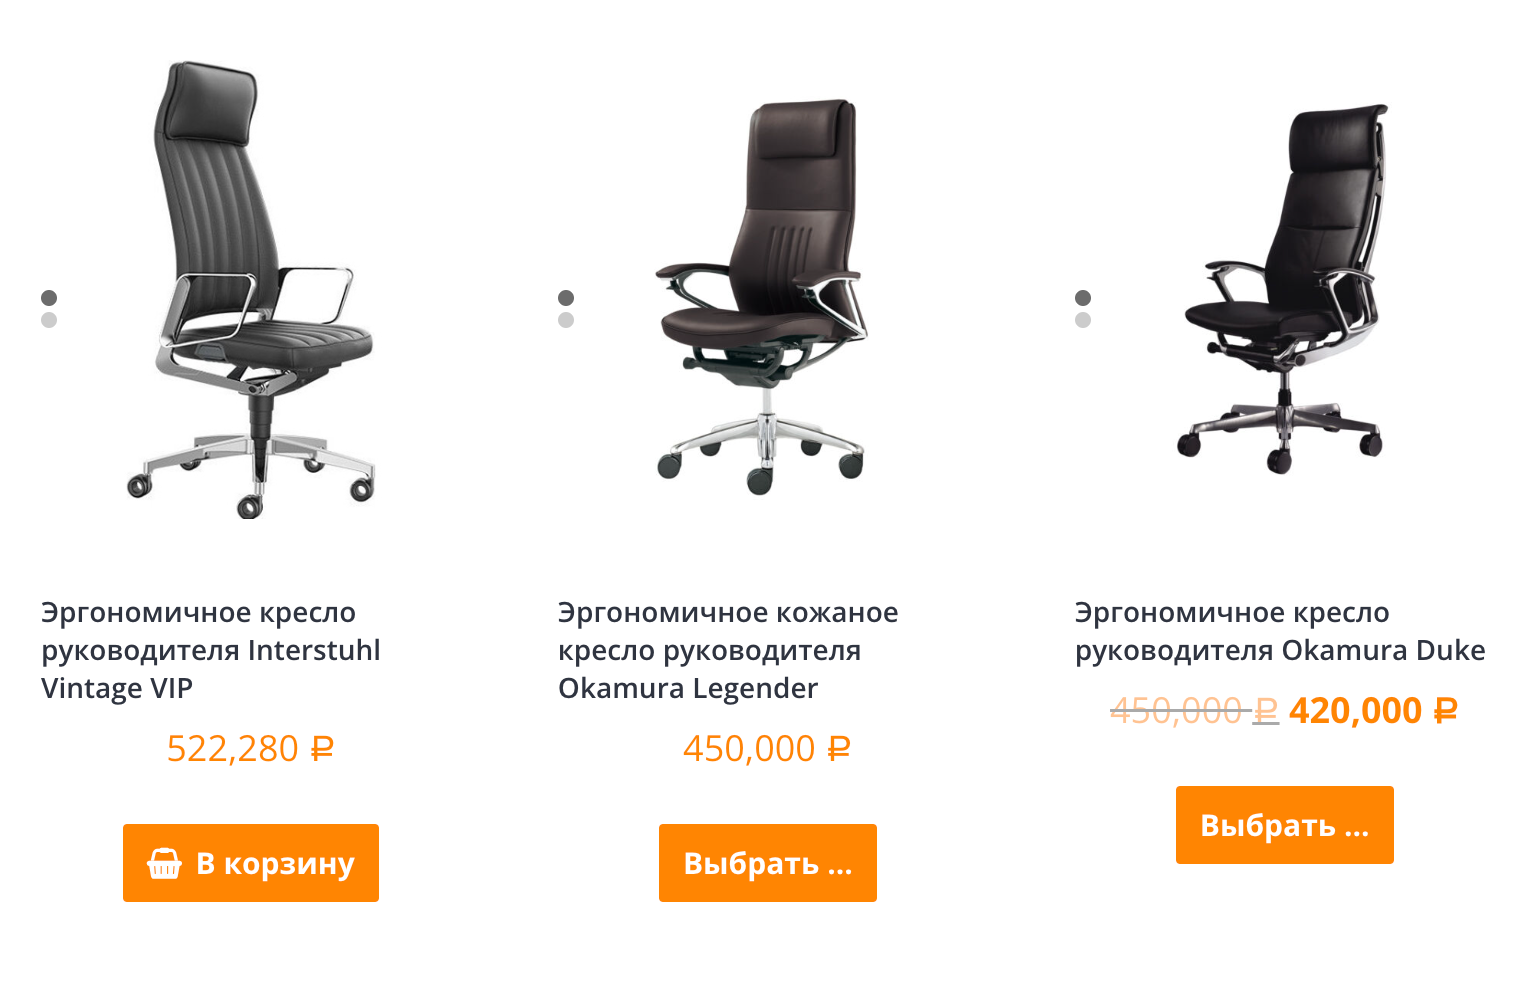 Стоимость эргономичных рабочих кресел может достигать полумиллиона рублей. Источник: ergo⁠-⁠store.ru